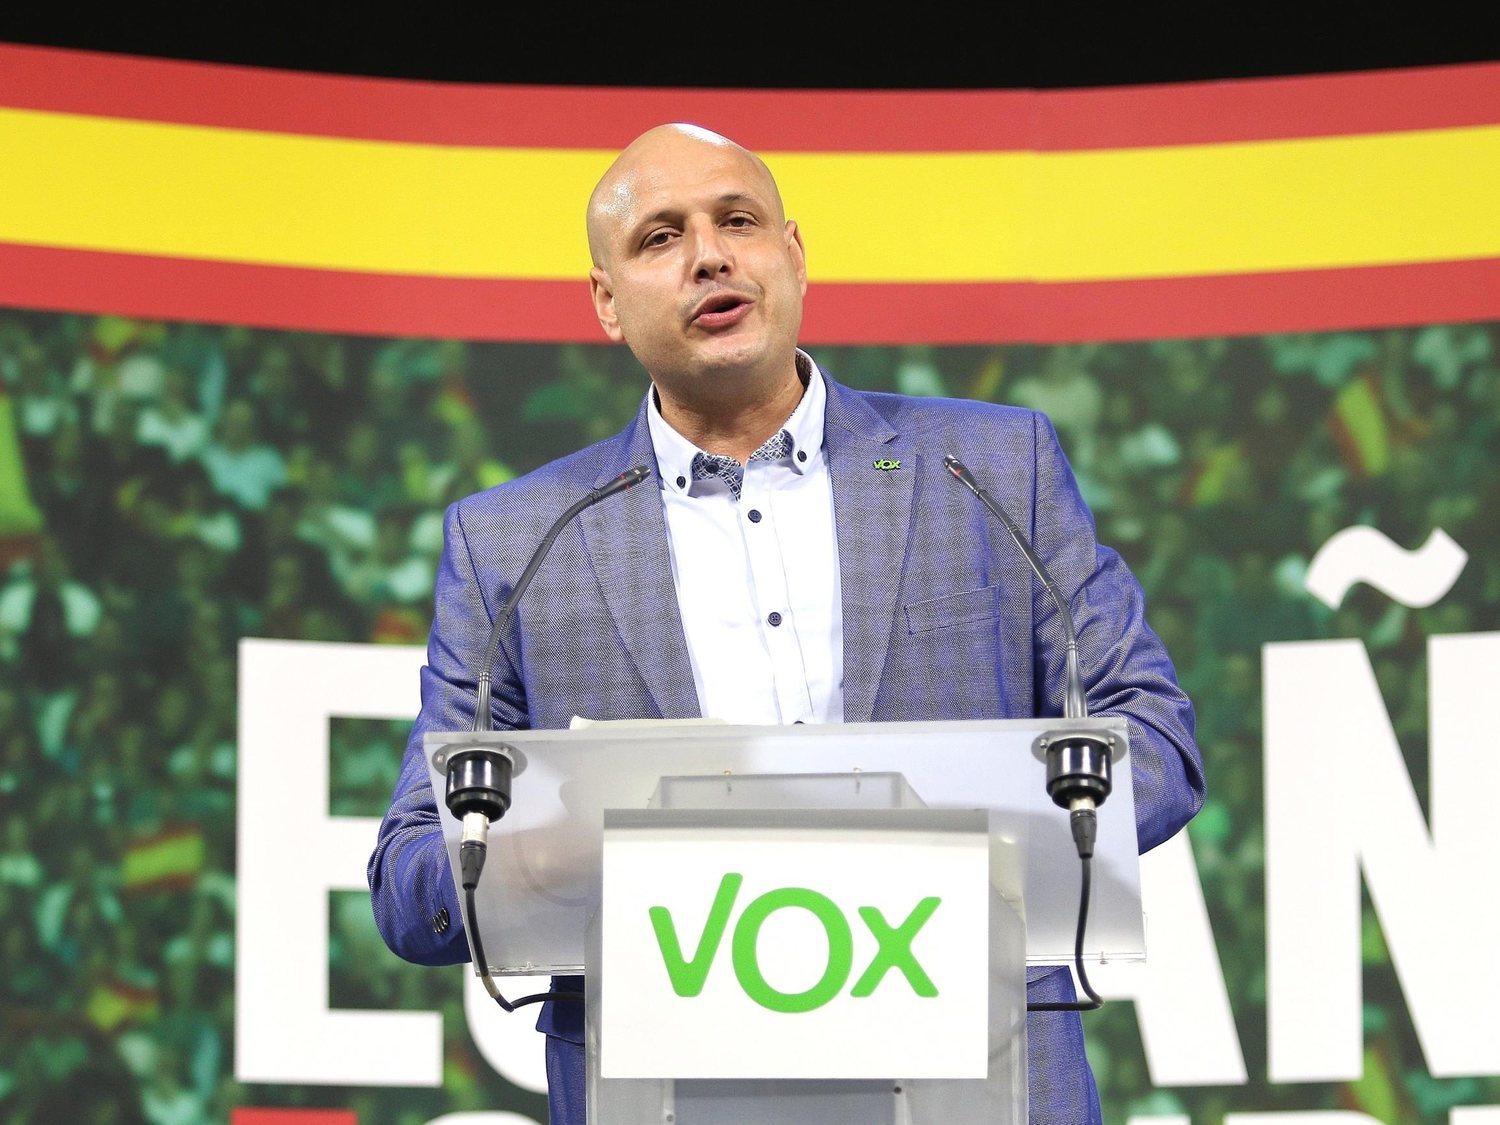 El sindicato de VOX elige como líder a un rico empresario conocido por defender a las clases altas